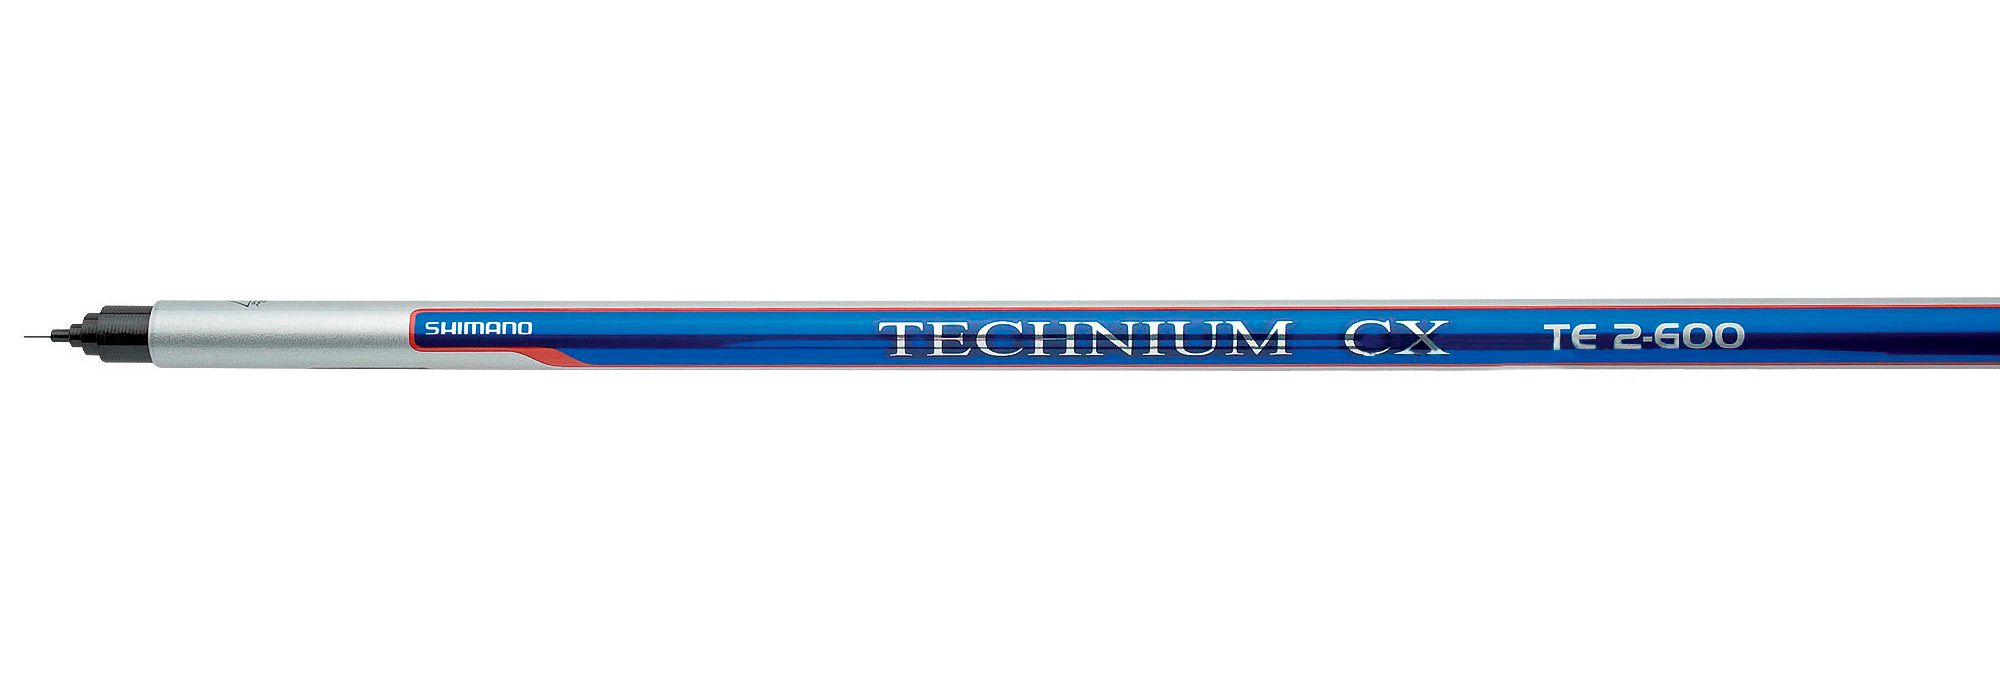 Удилище Shimano Technium СX TE 2-600 - фото 1